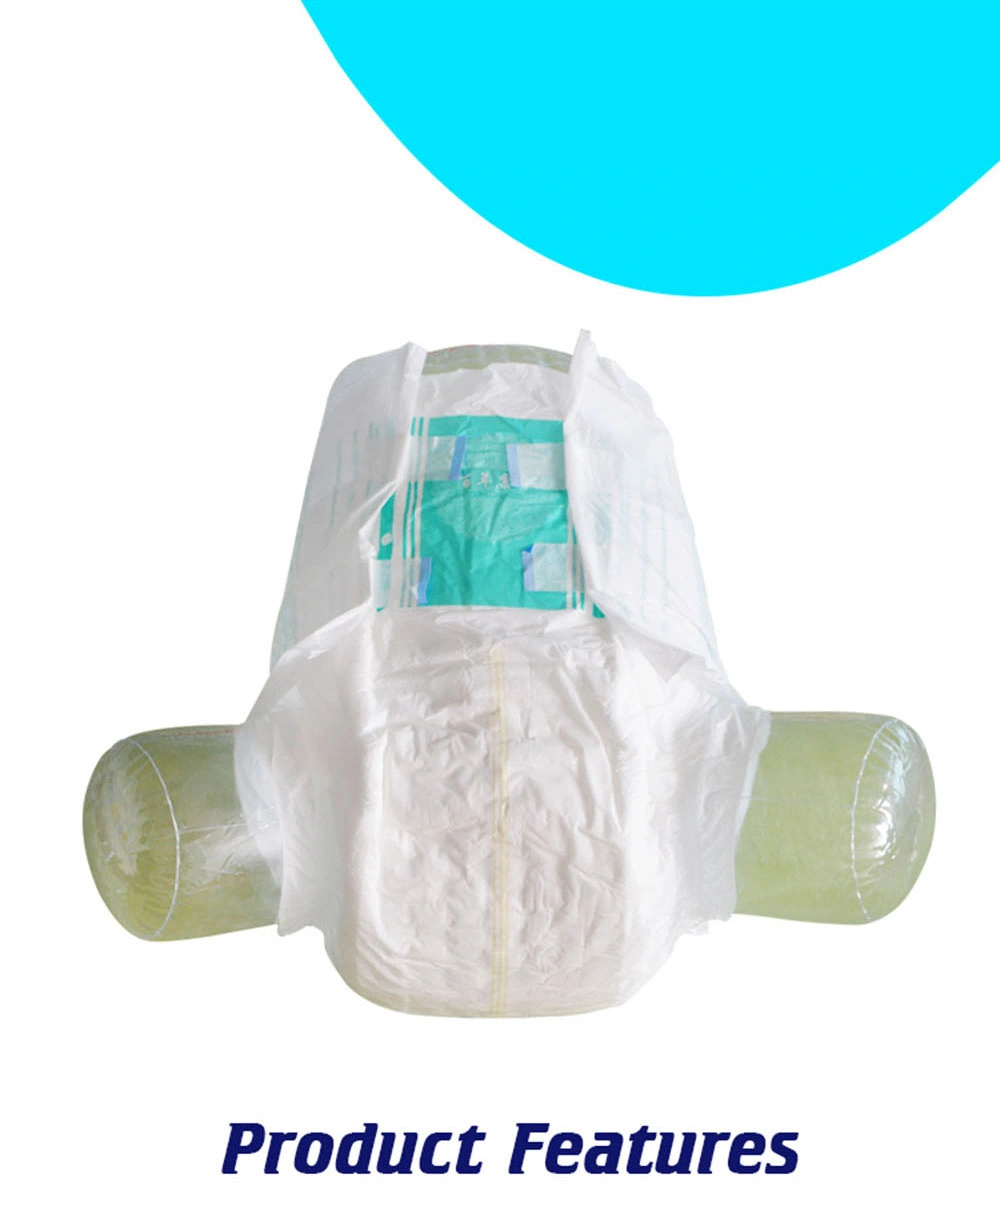 Free  Adult  Diapers  Samples  Adult  Diapers  Diaper  Printed